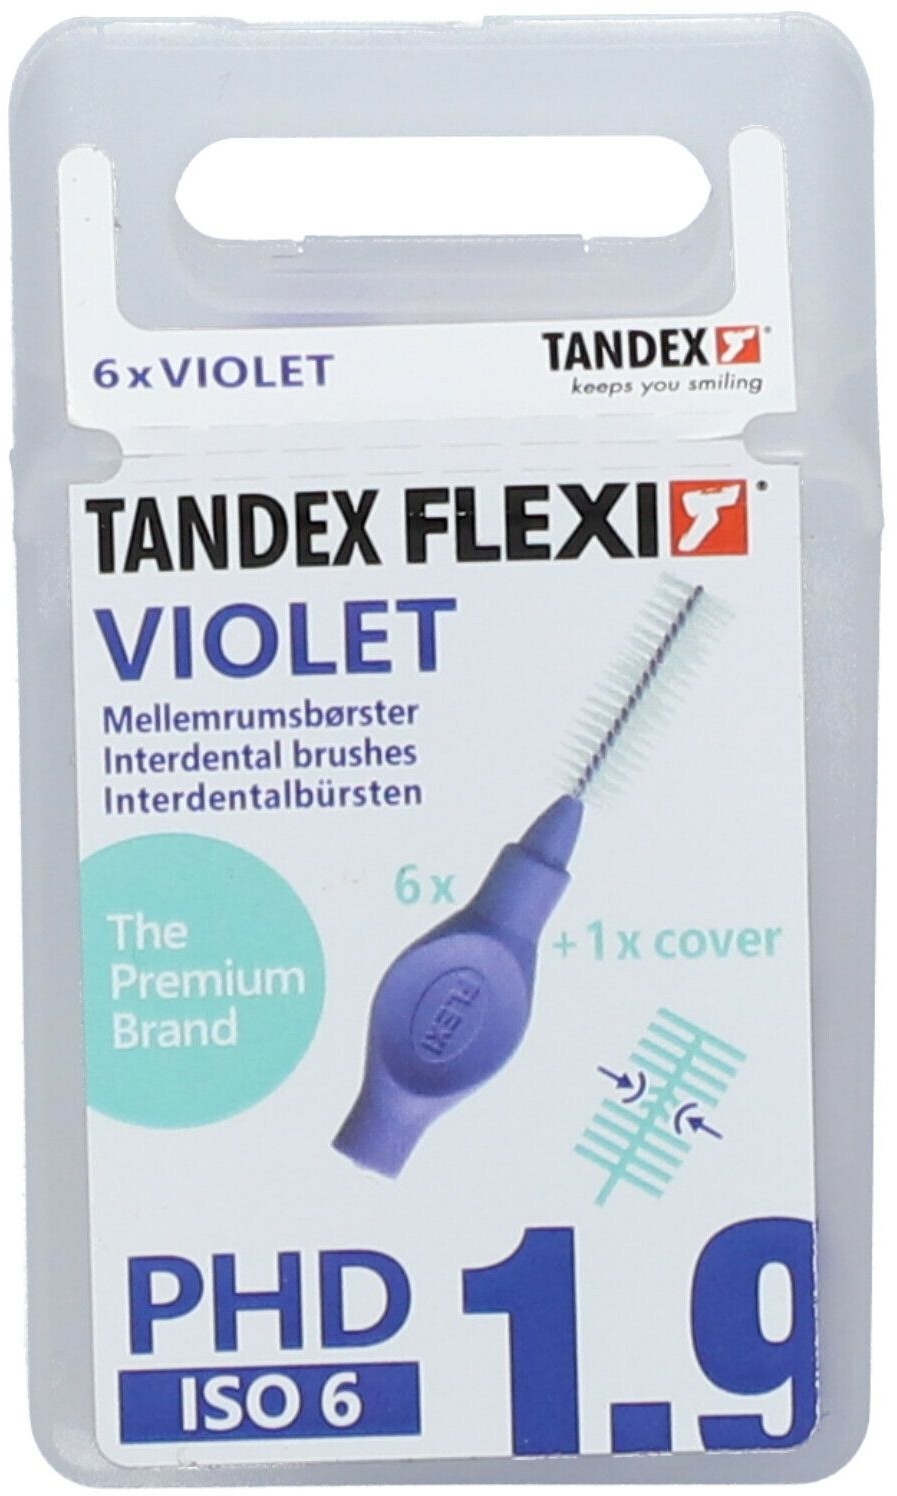 Tandex® Flexi Interdentalbürsten violett 8 mm